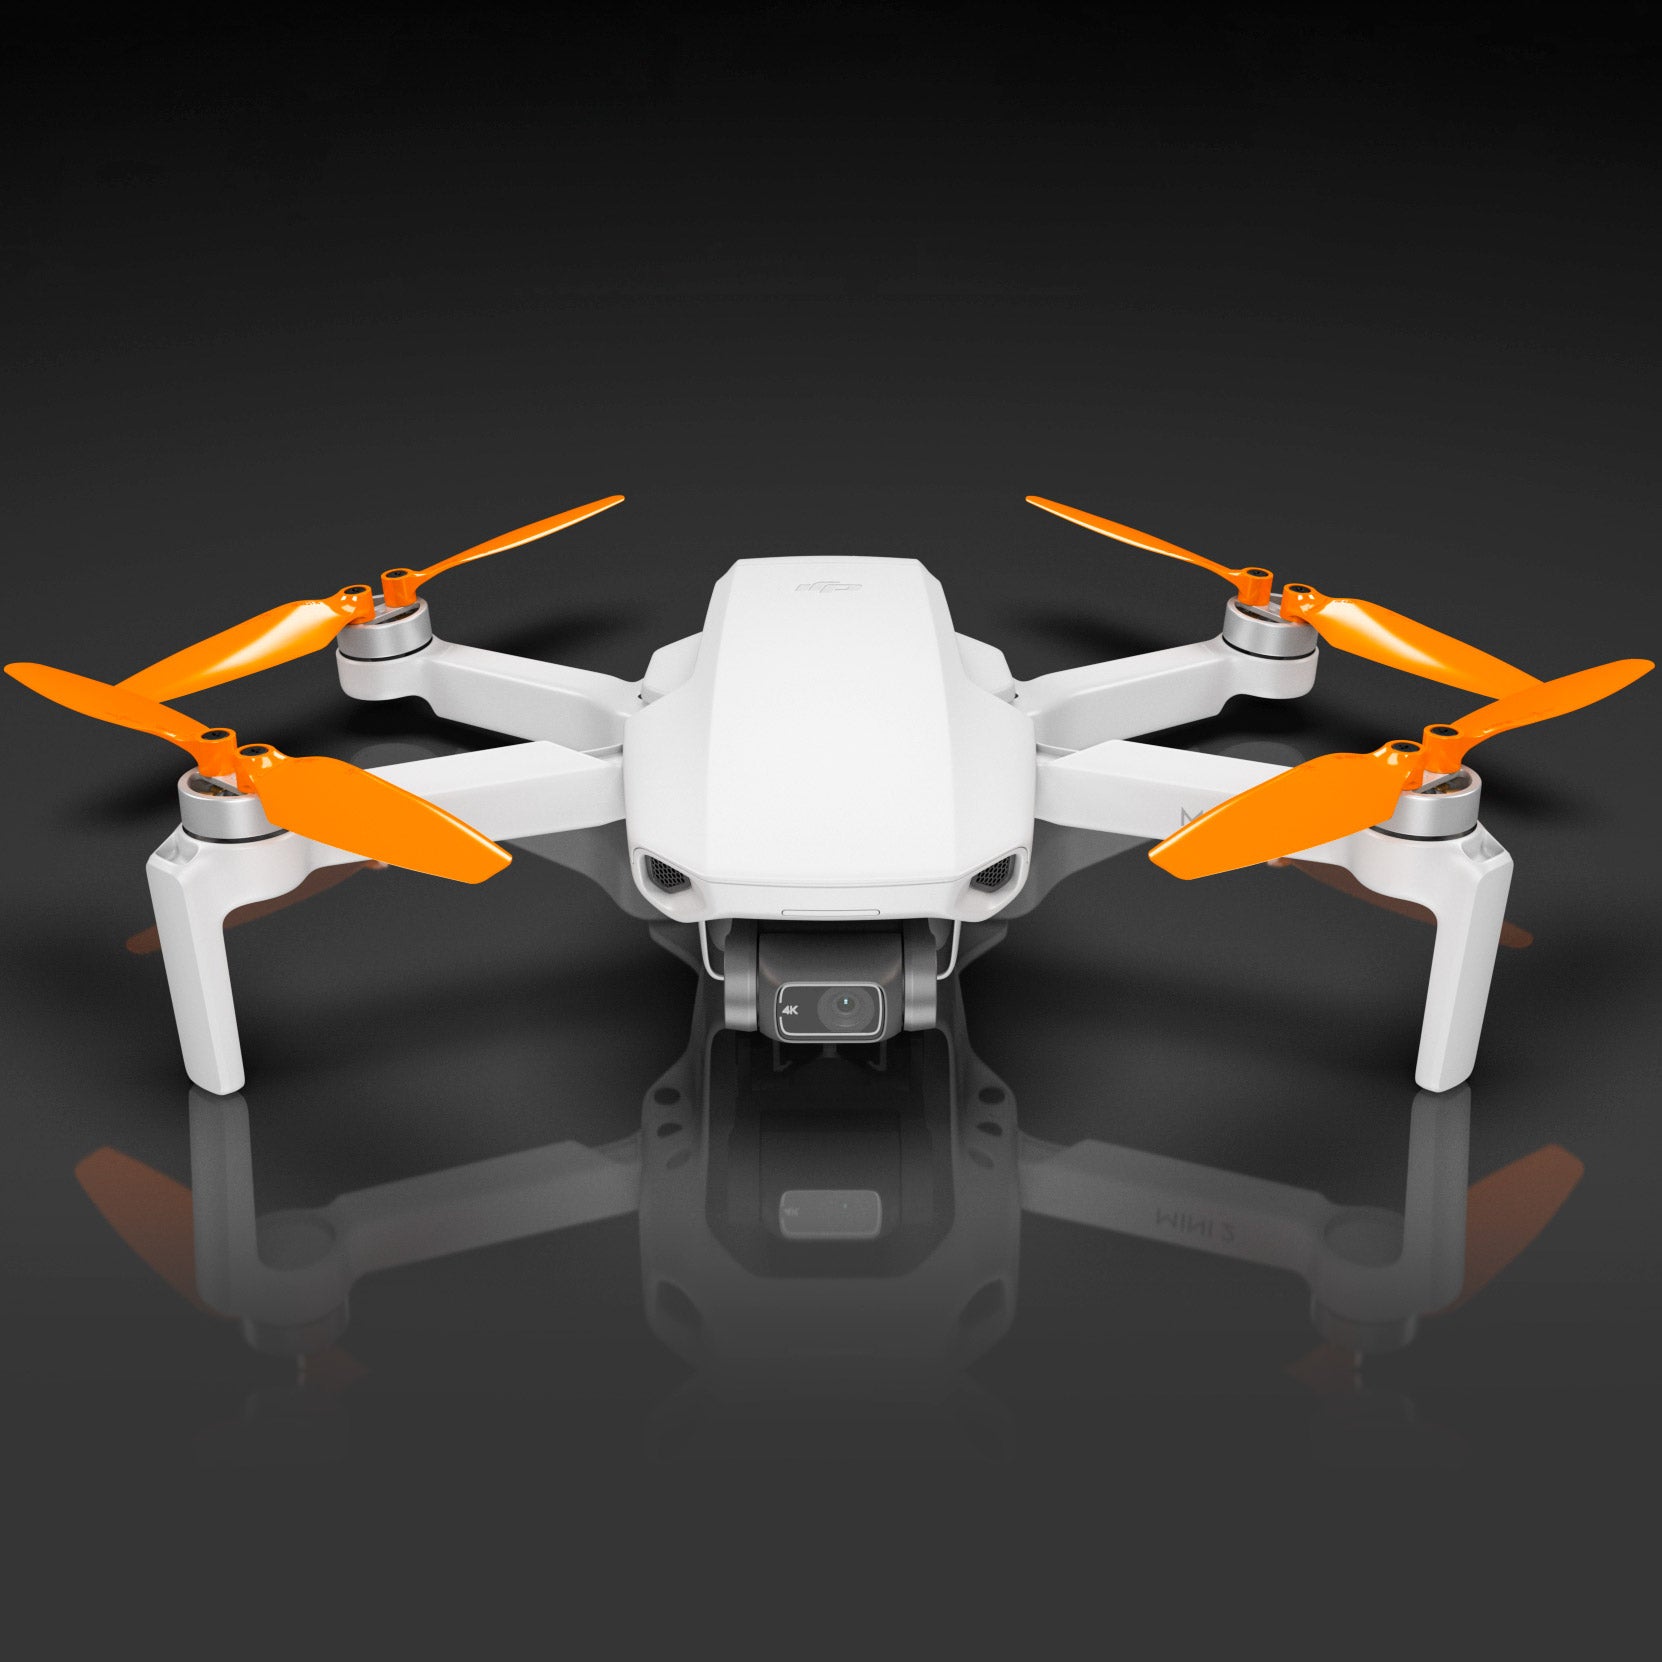 DJI's Drones under $600—The Mini 2 SE vs. the Mini 2 and More